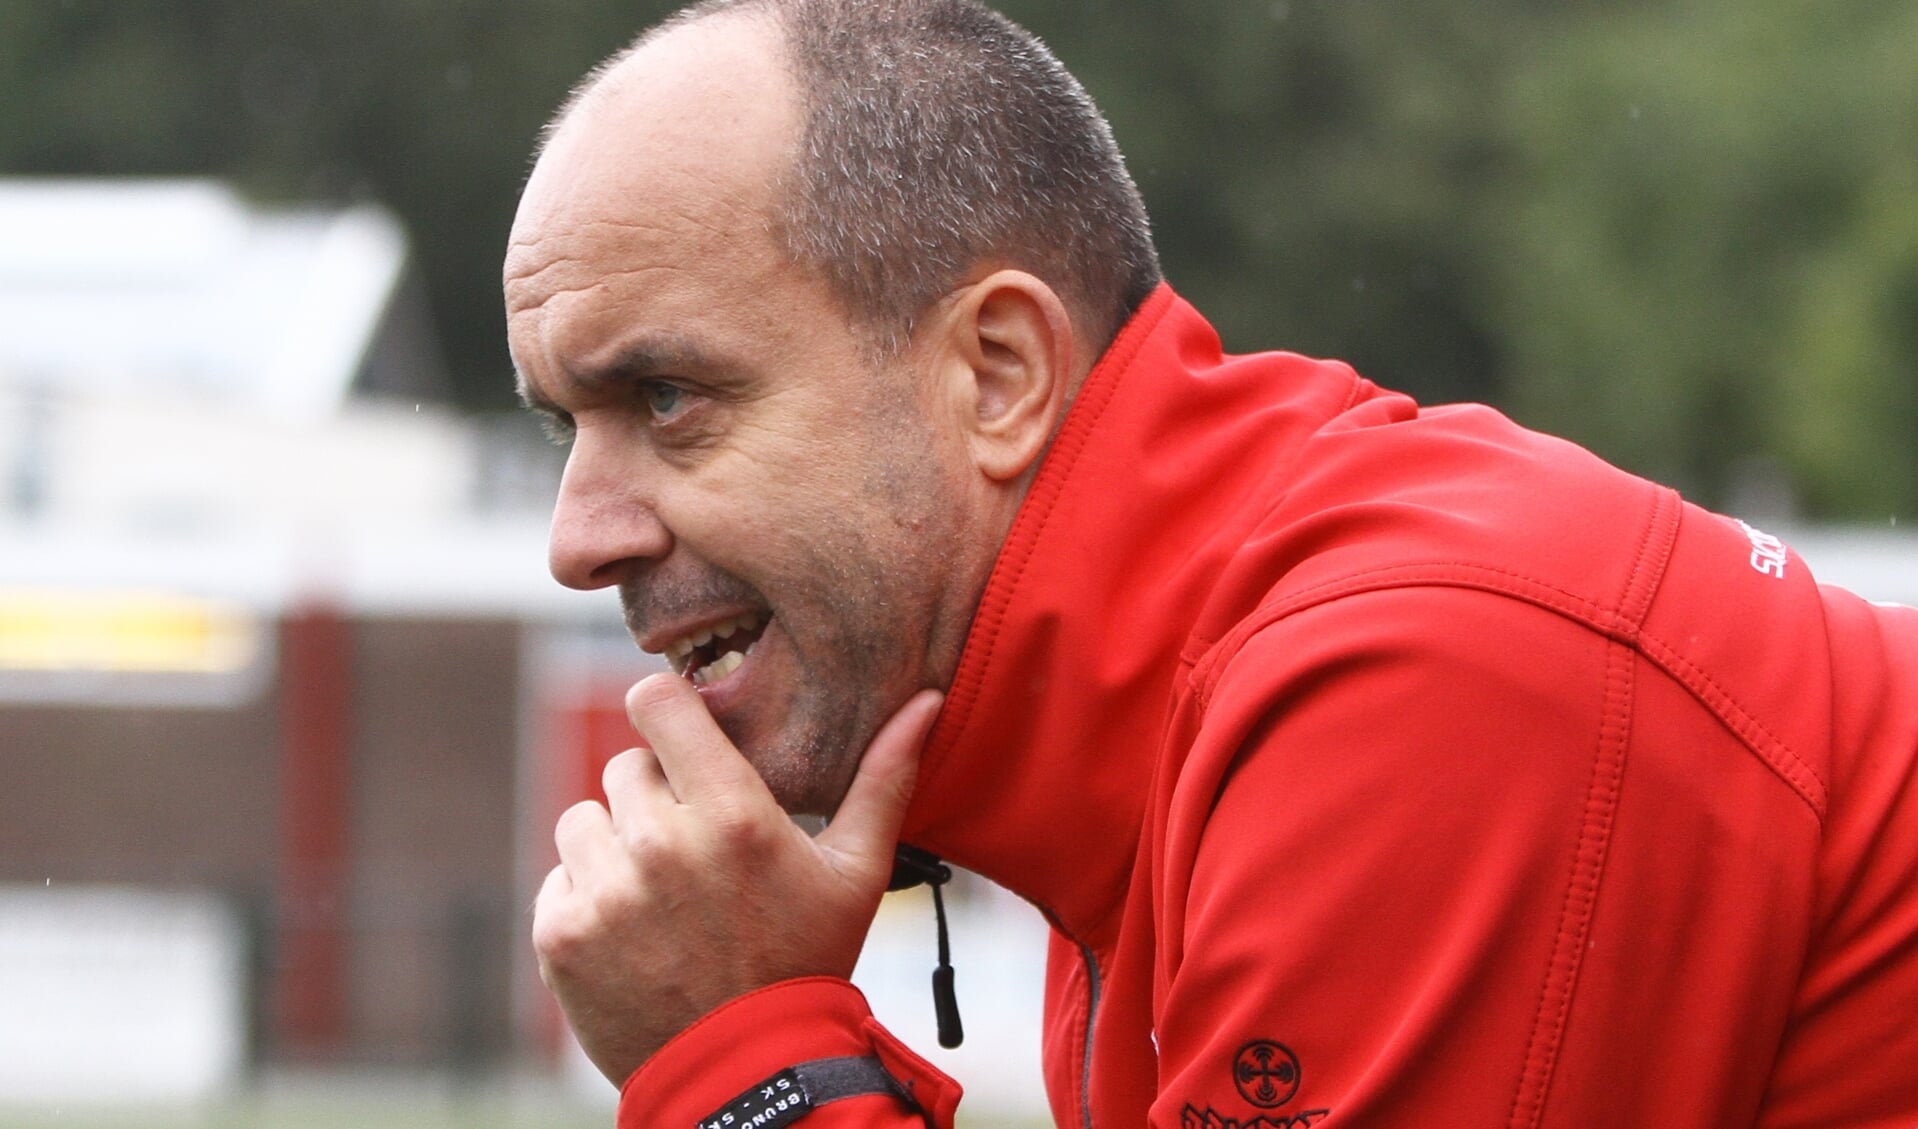 Rob van den Broek, coach van Valleivogels.